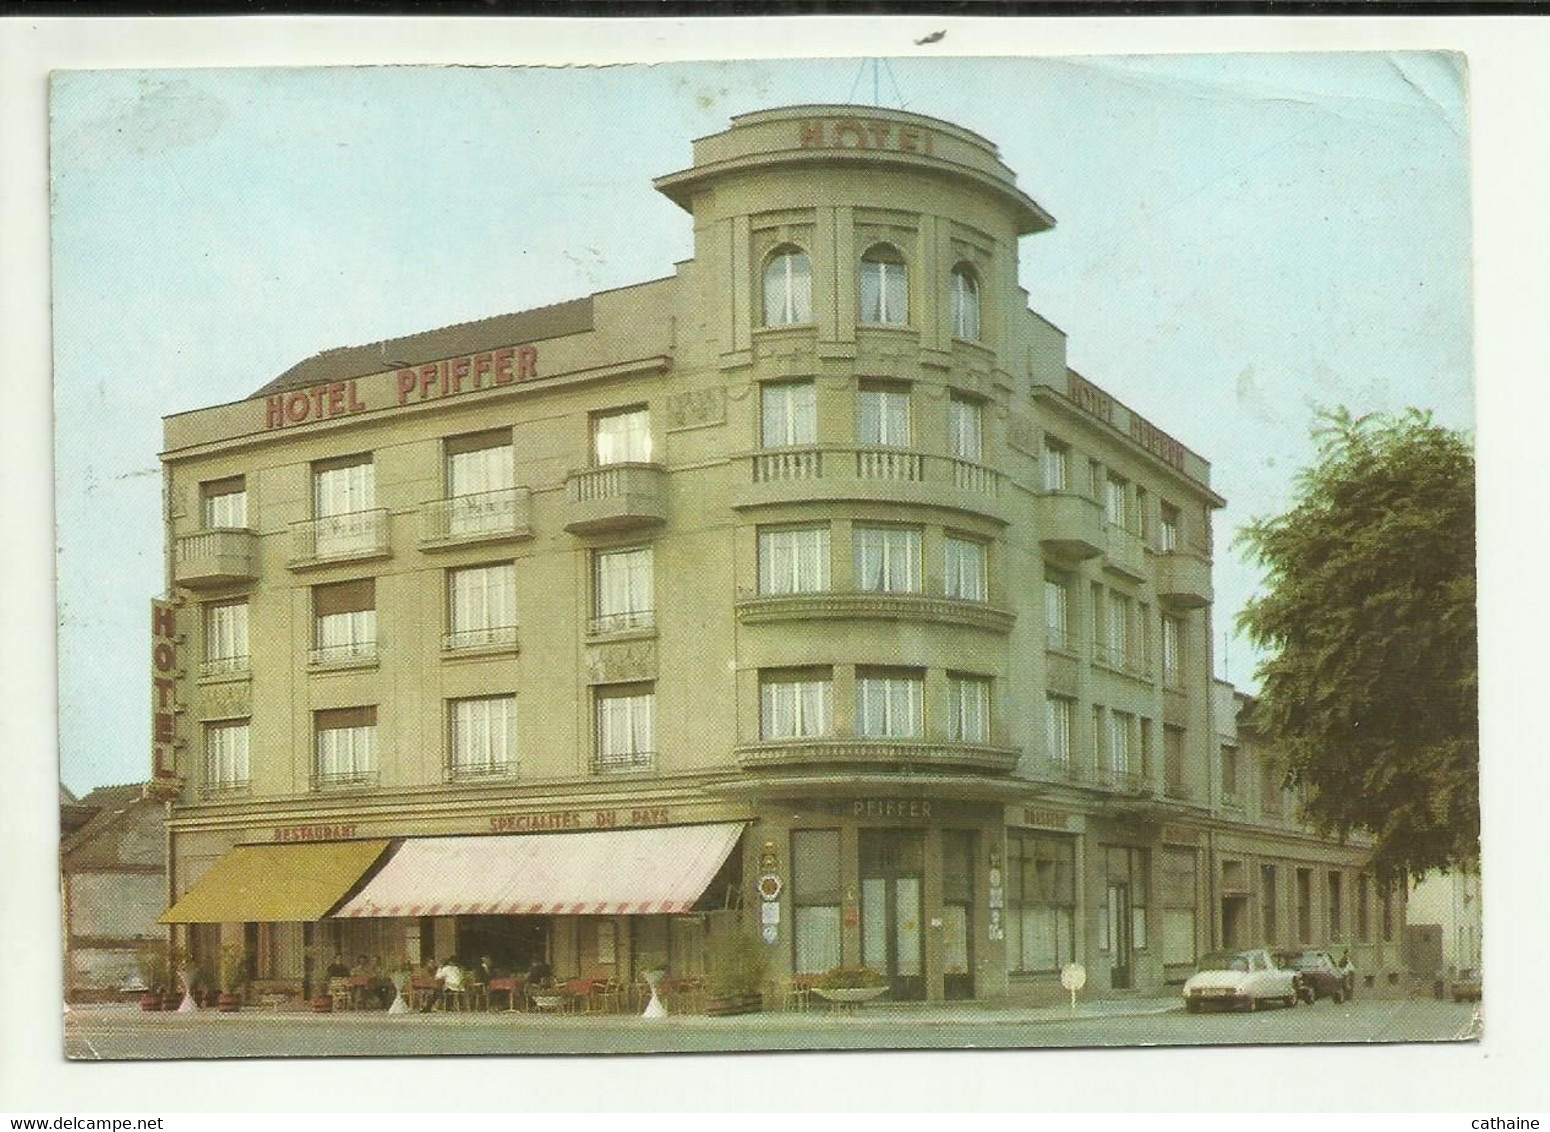 68 . SAINT LOUIS . GRAND HOTEL PFIFFER . PROPRIETAIRE "ROLAND PFIFFER DIPLOME DE L ECOLE HOTELIERE DE LAUSANNE - Saint Louis